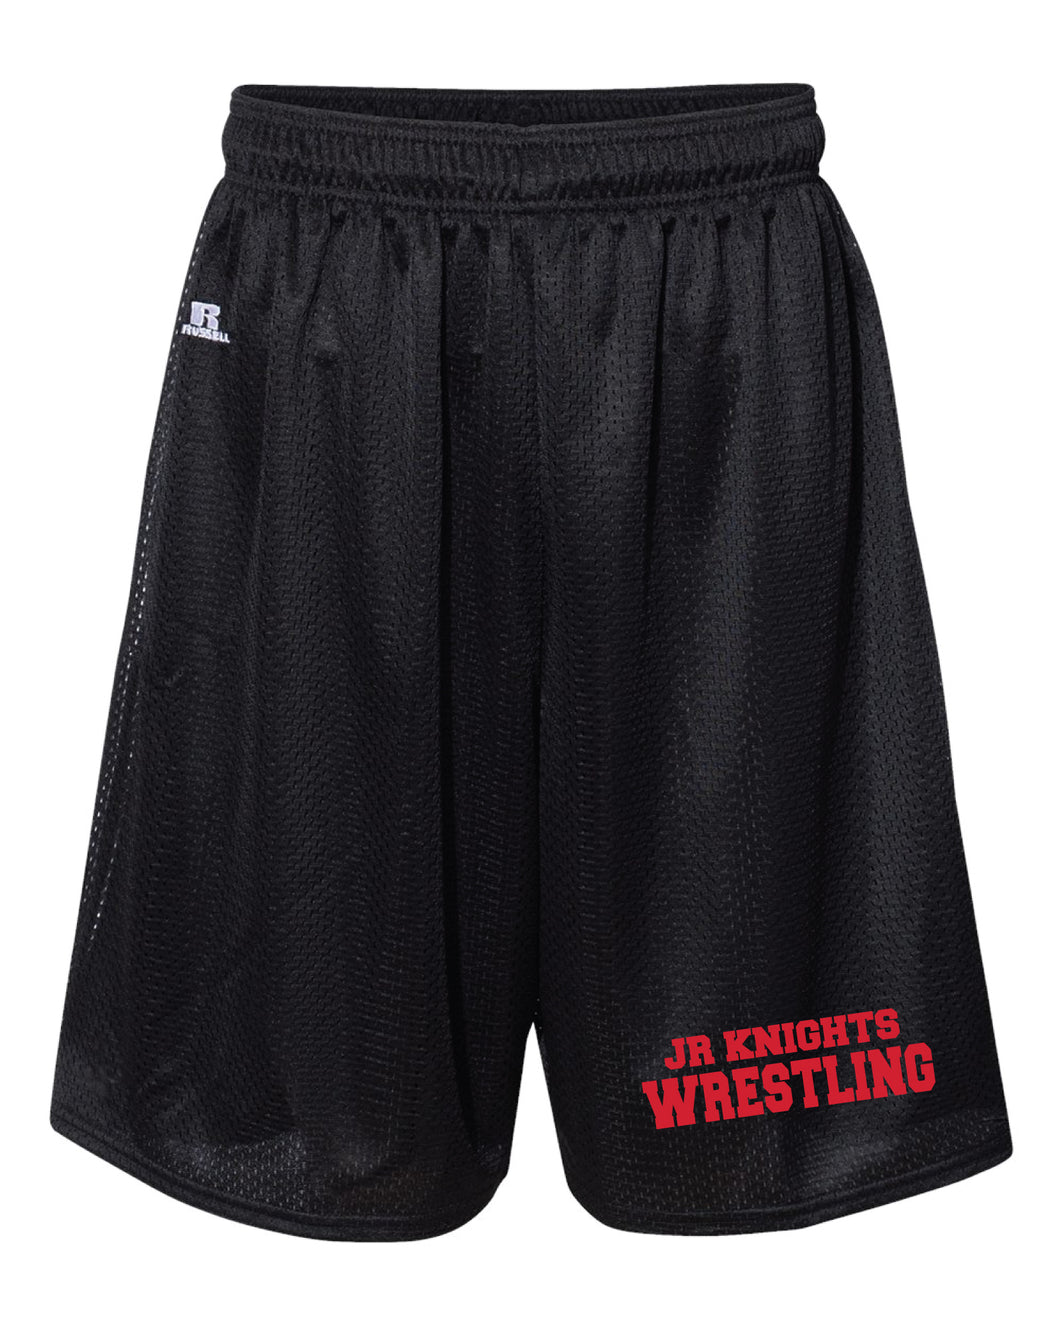 Jr. Knights Wrestling Tech Shorts - Black - 5KounT